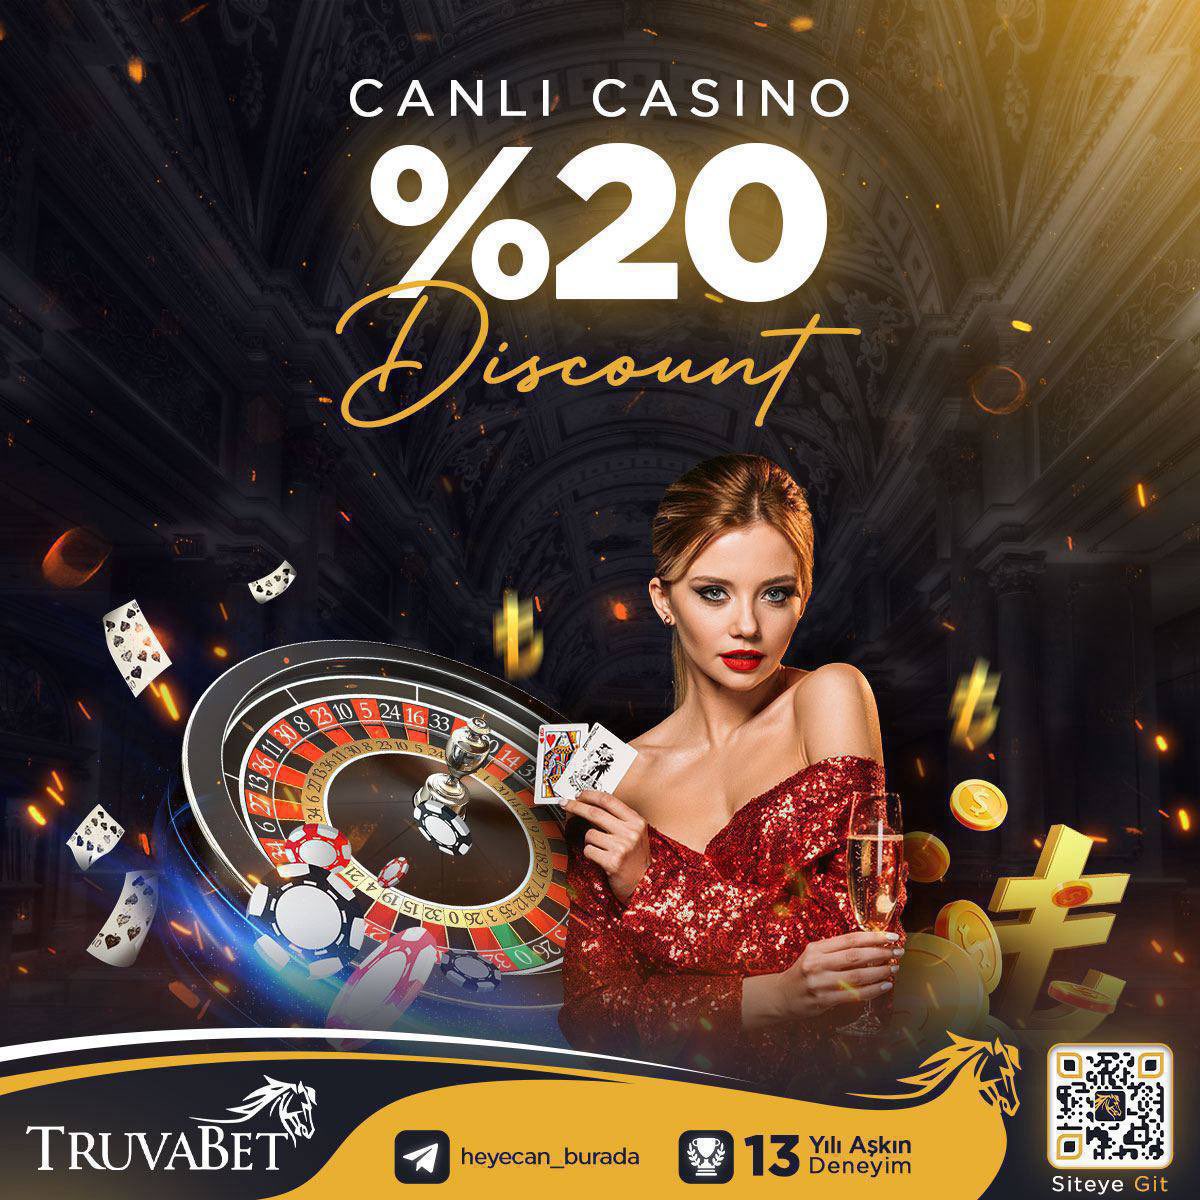 KAYBETMEK YOK! Truvabet 'ten %20 Canlı Casino Discount Fırsatı seni bekliyor. Şansını denemek için mükemmel bir zaman! Bu heyecan verici fırsat bir tık yakınında ve sen sadece bir adım ötedesin! 13 YILLIK DENEYİM LİMİTSİZ ÇEKİM&YATIRIM TRUVABET I KÜÇÜK MUTLULUKLARLA…